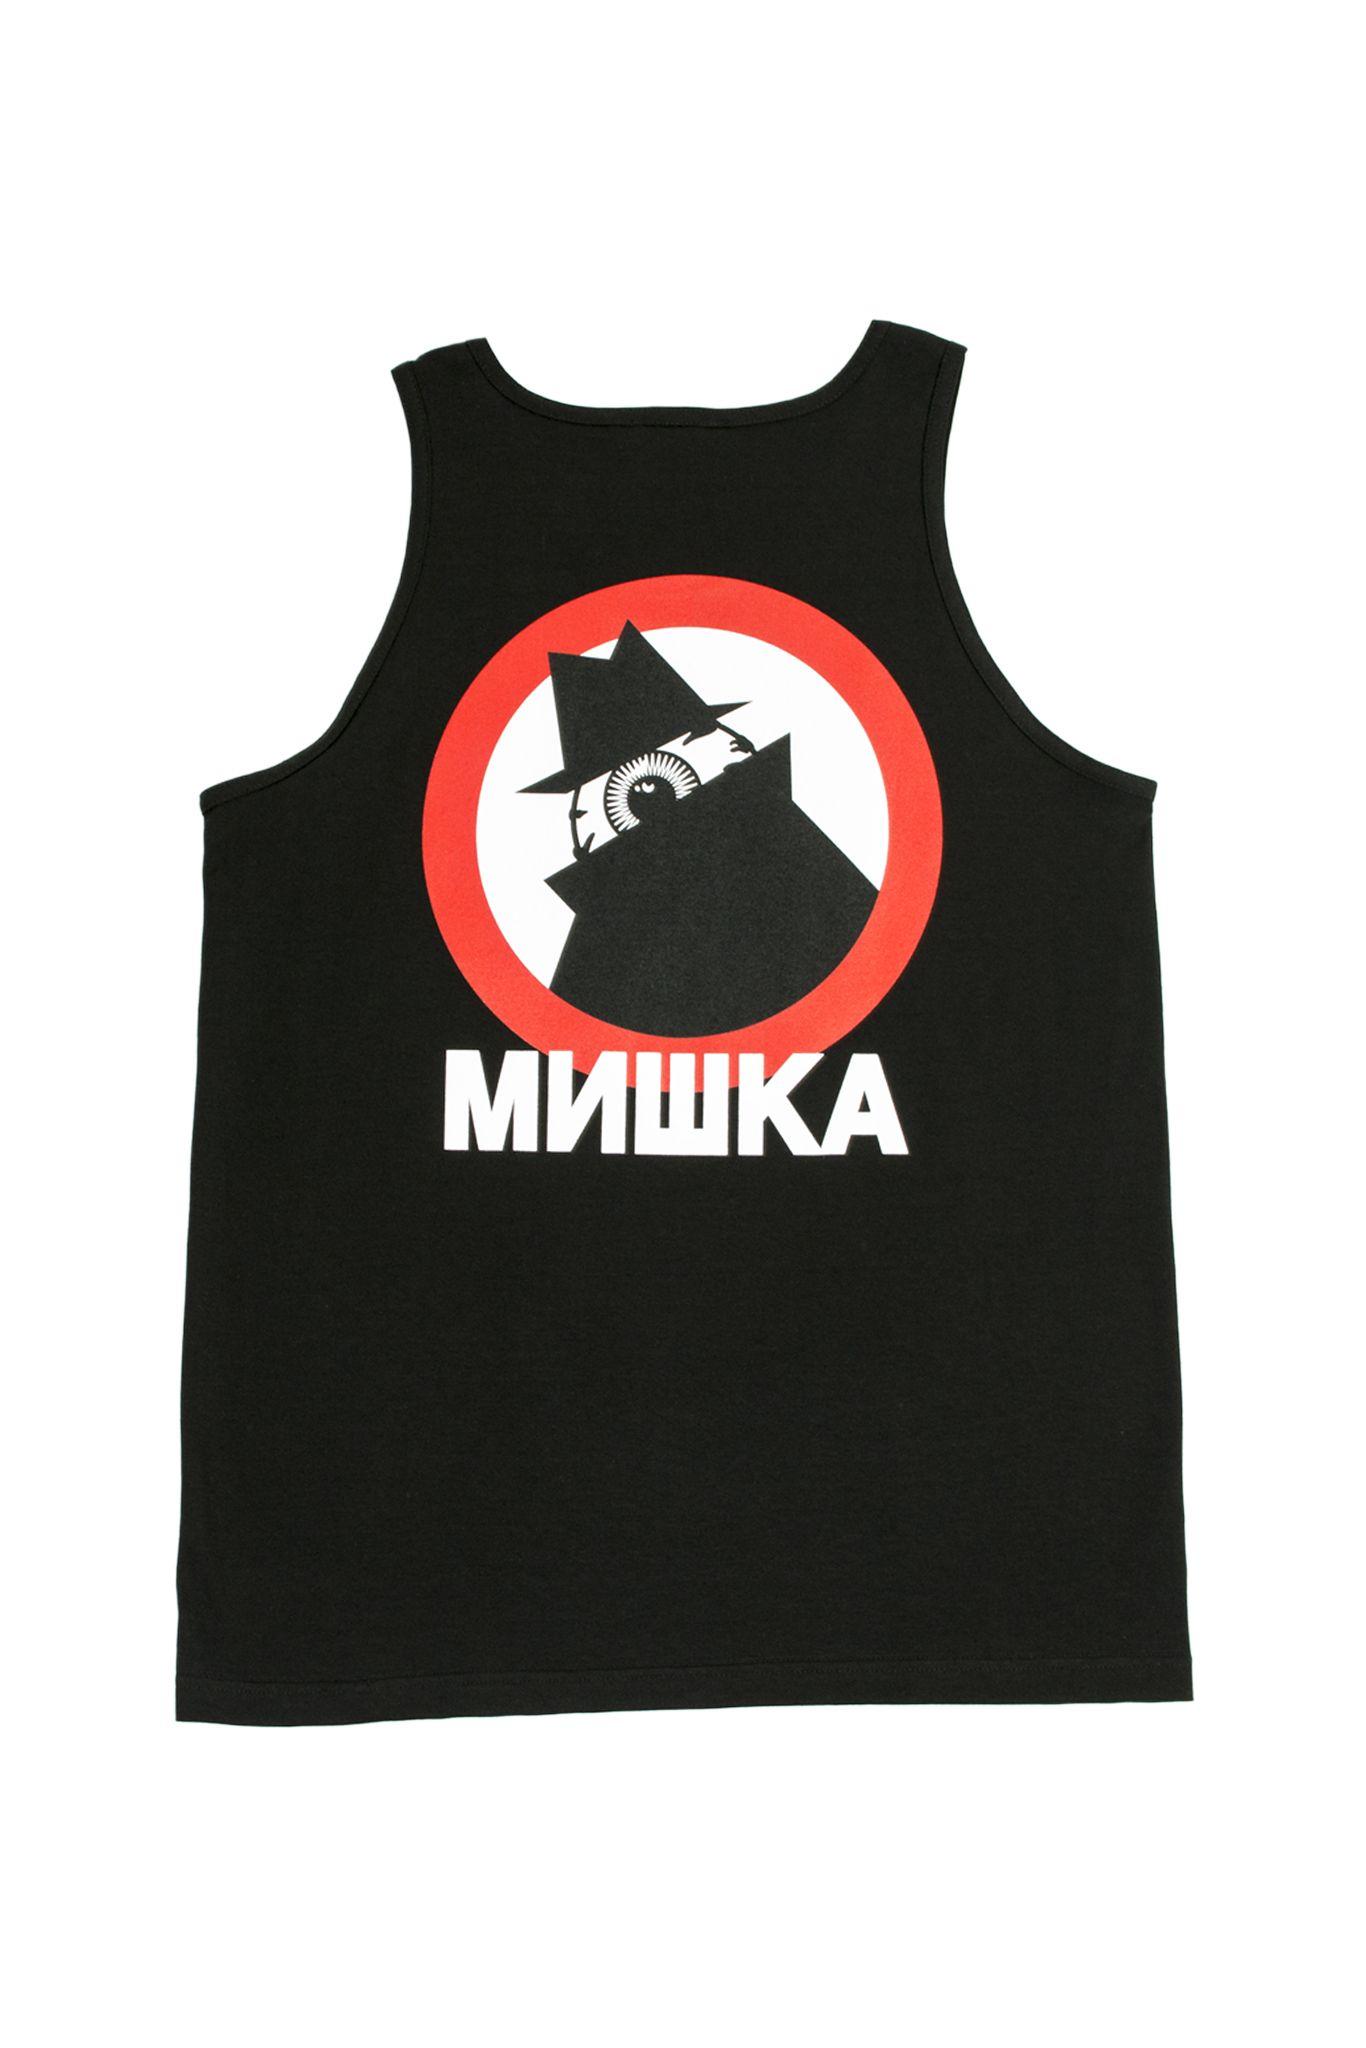 Mishka Keep Watch Logo - Mishka 